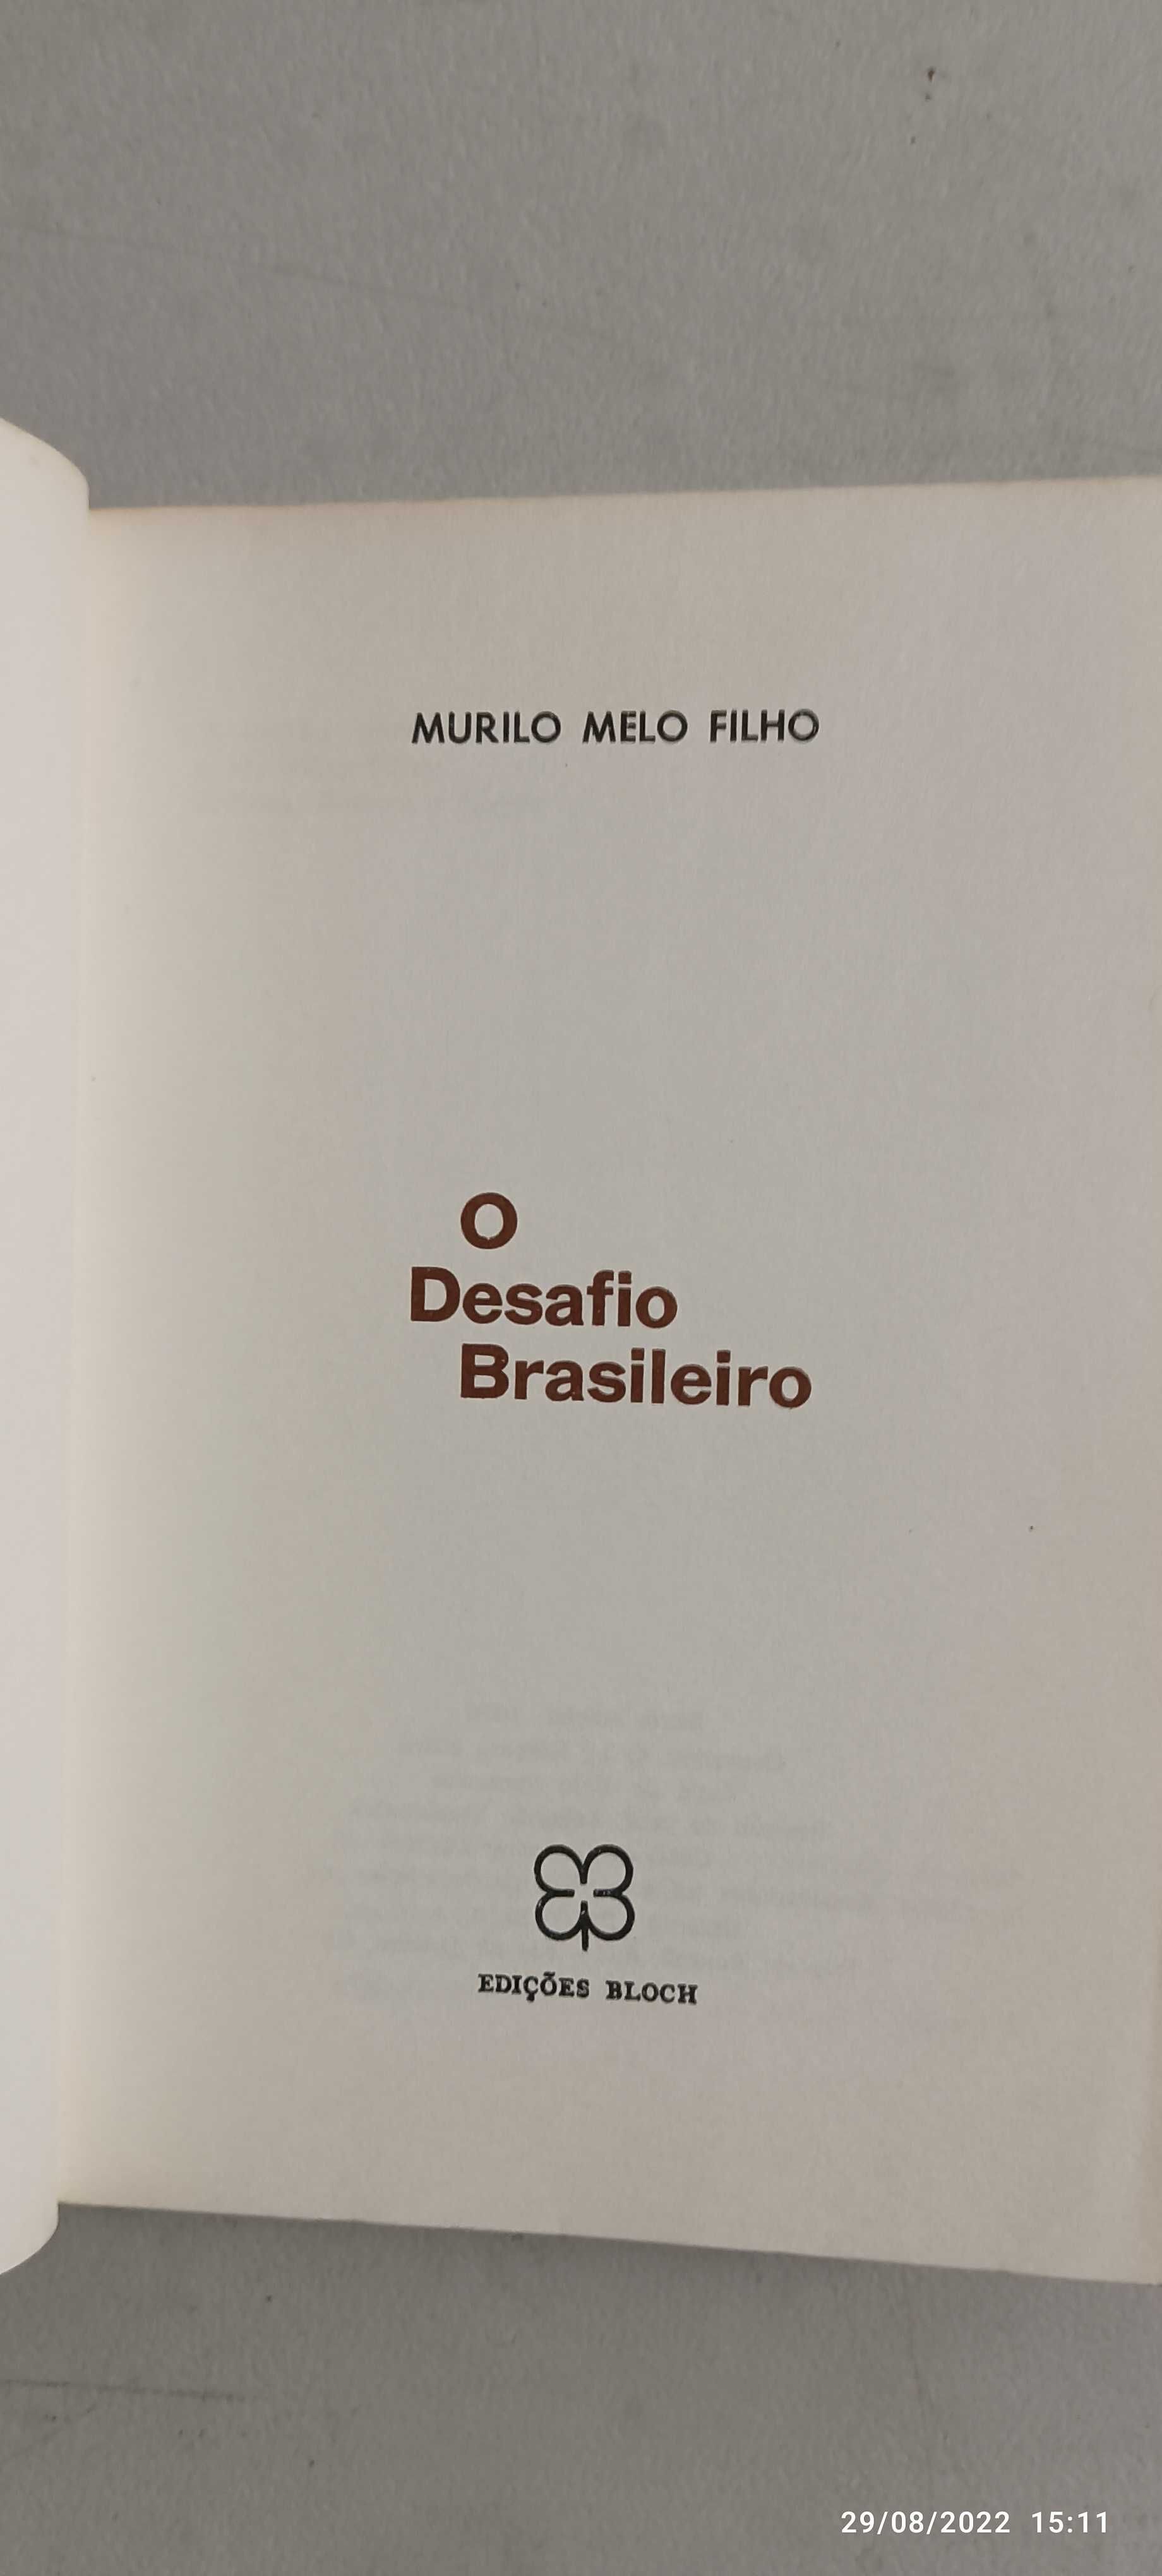 Livro Pa-1 - Murilo Melo Filho - O desafio Brasileiro